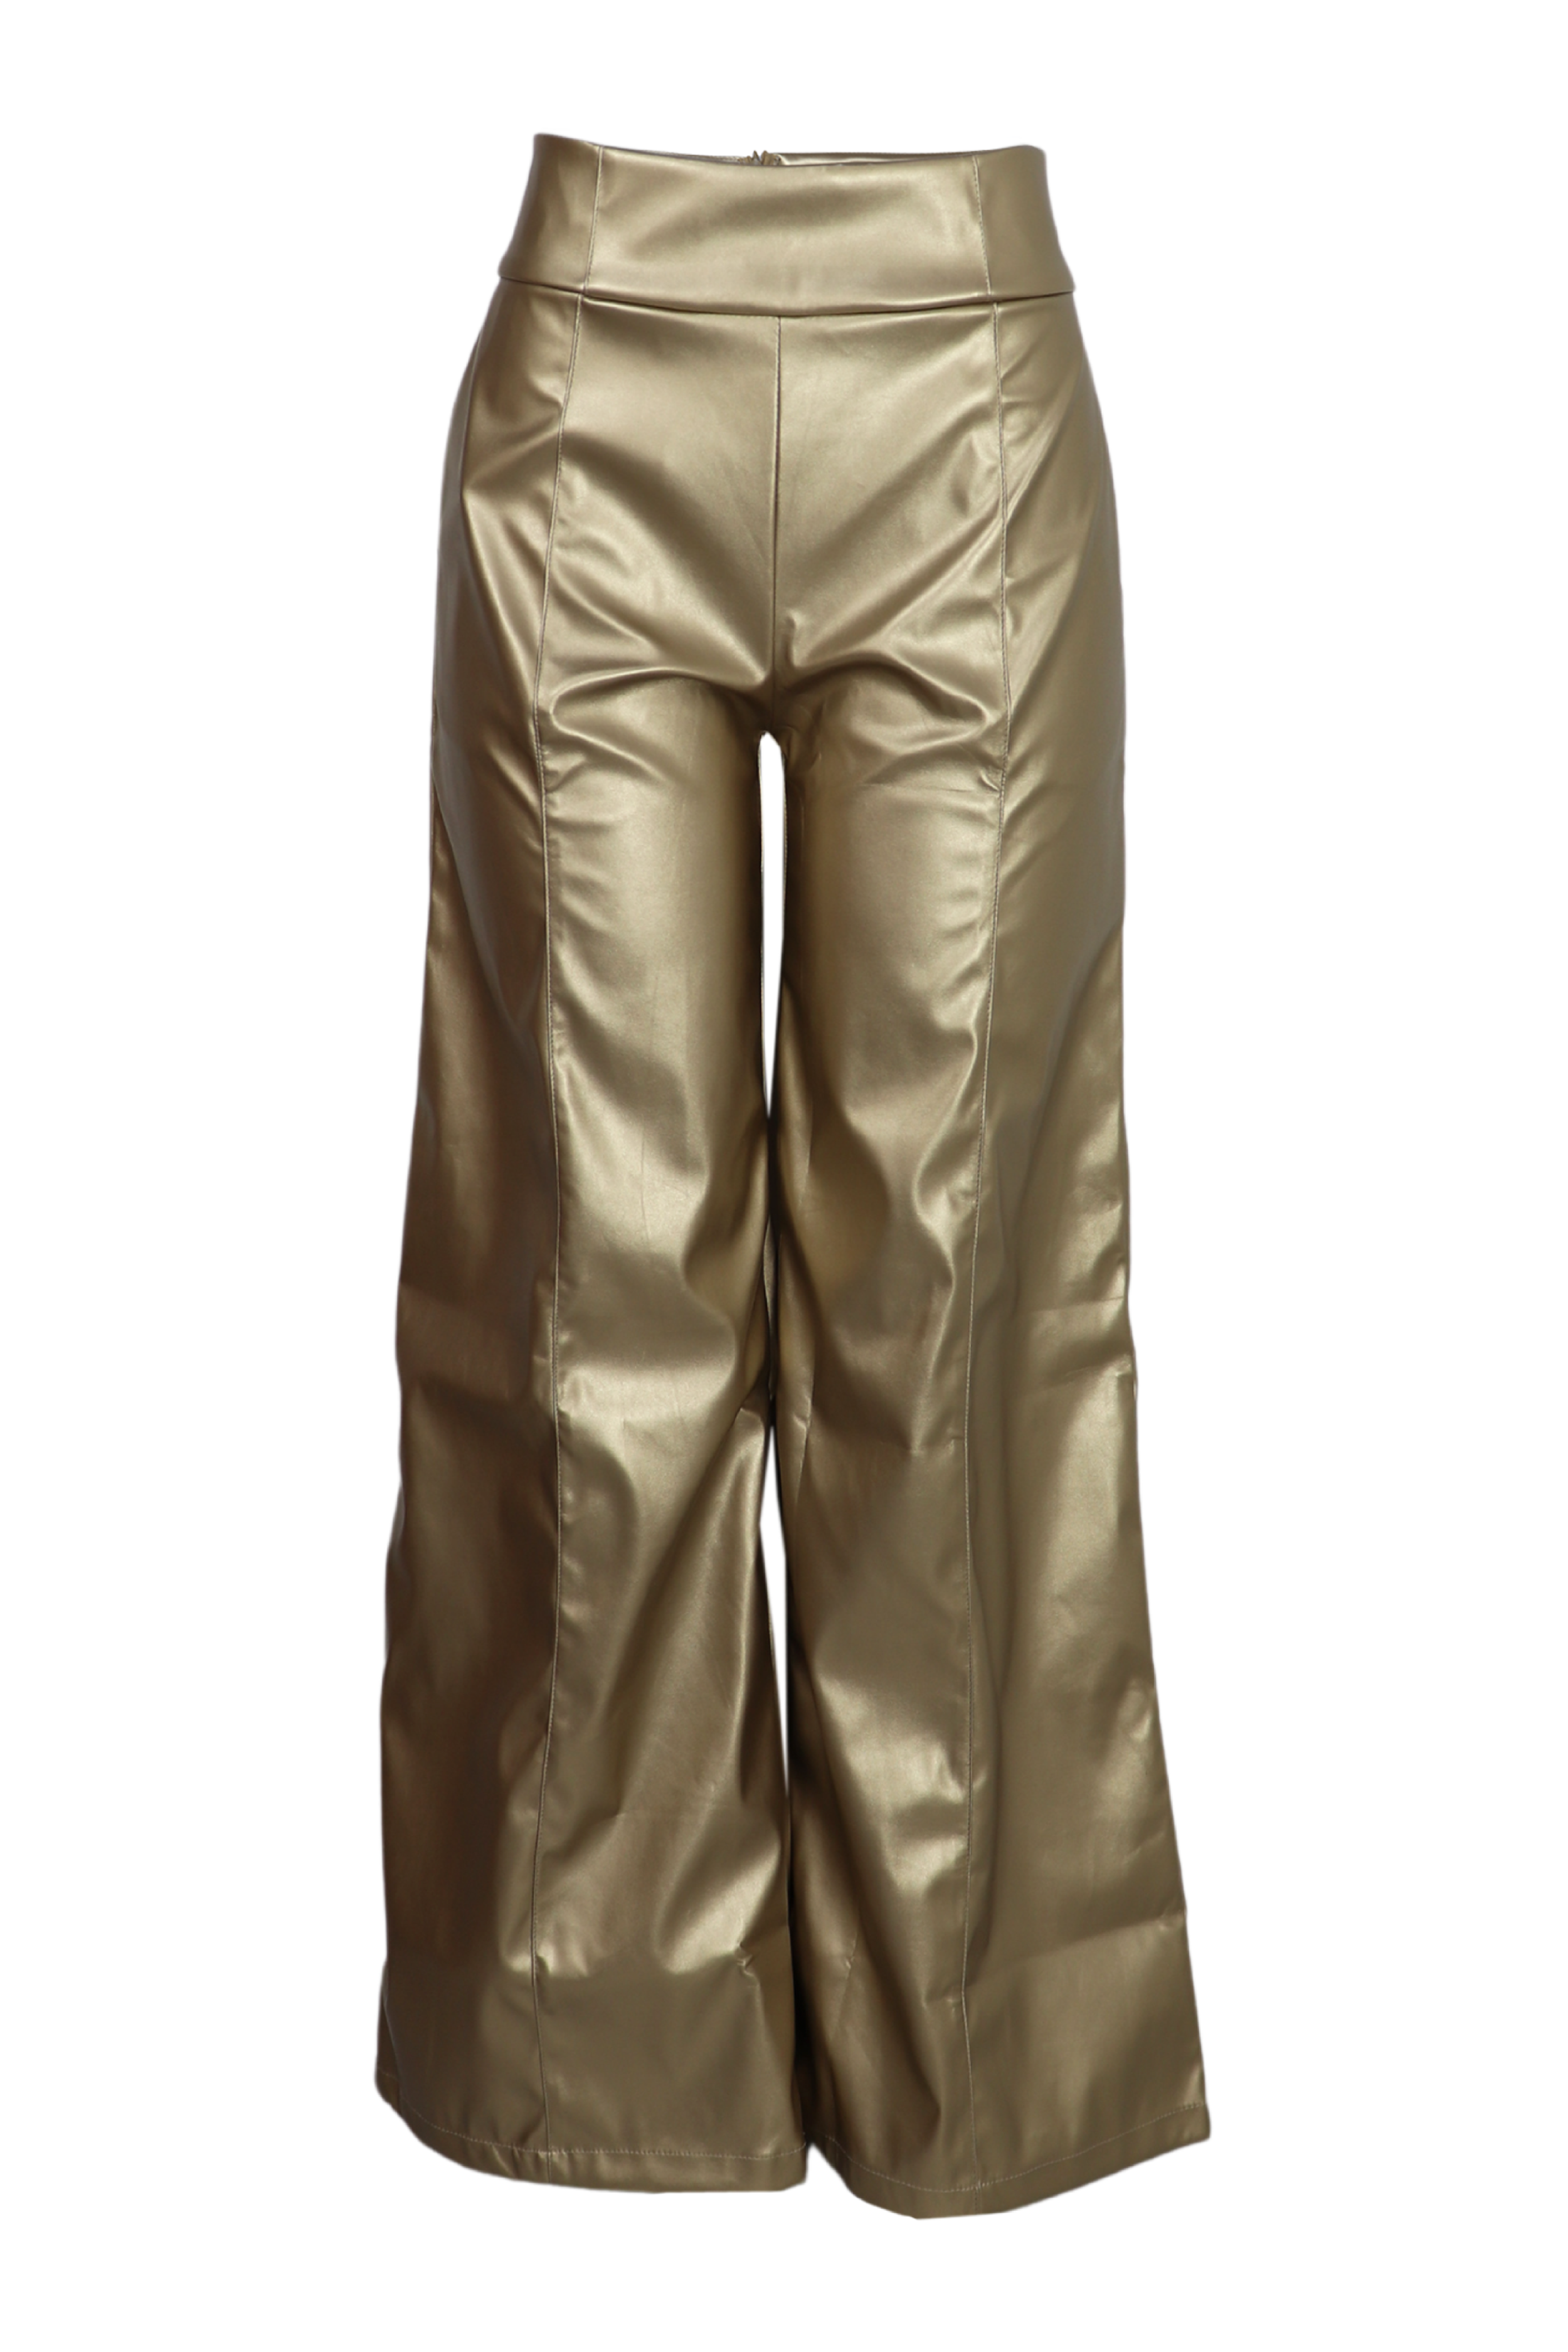 Pantalon bota recta con efecto metalizado color dorado